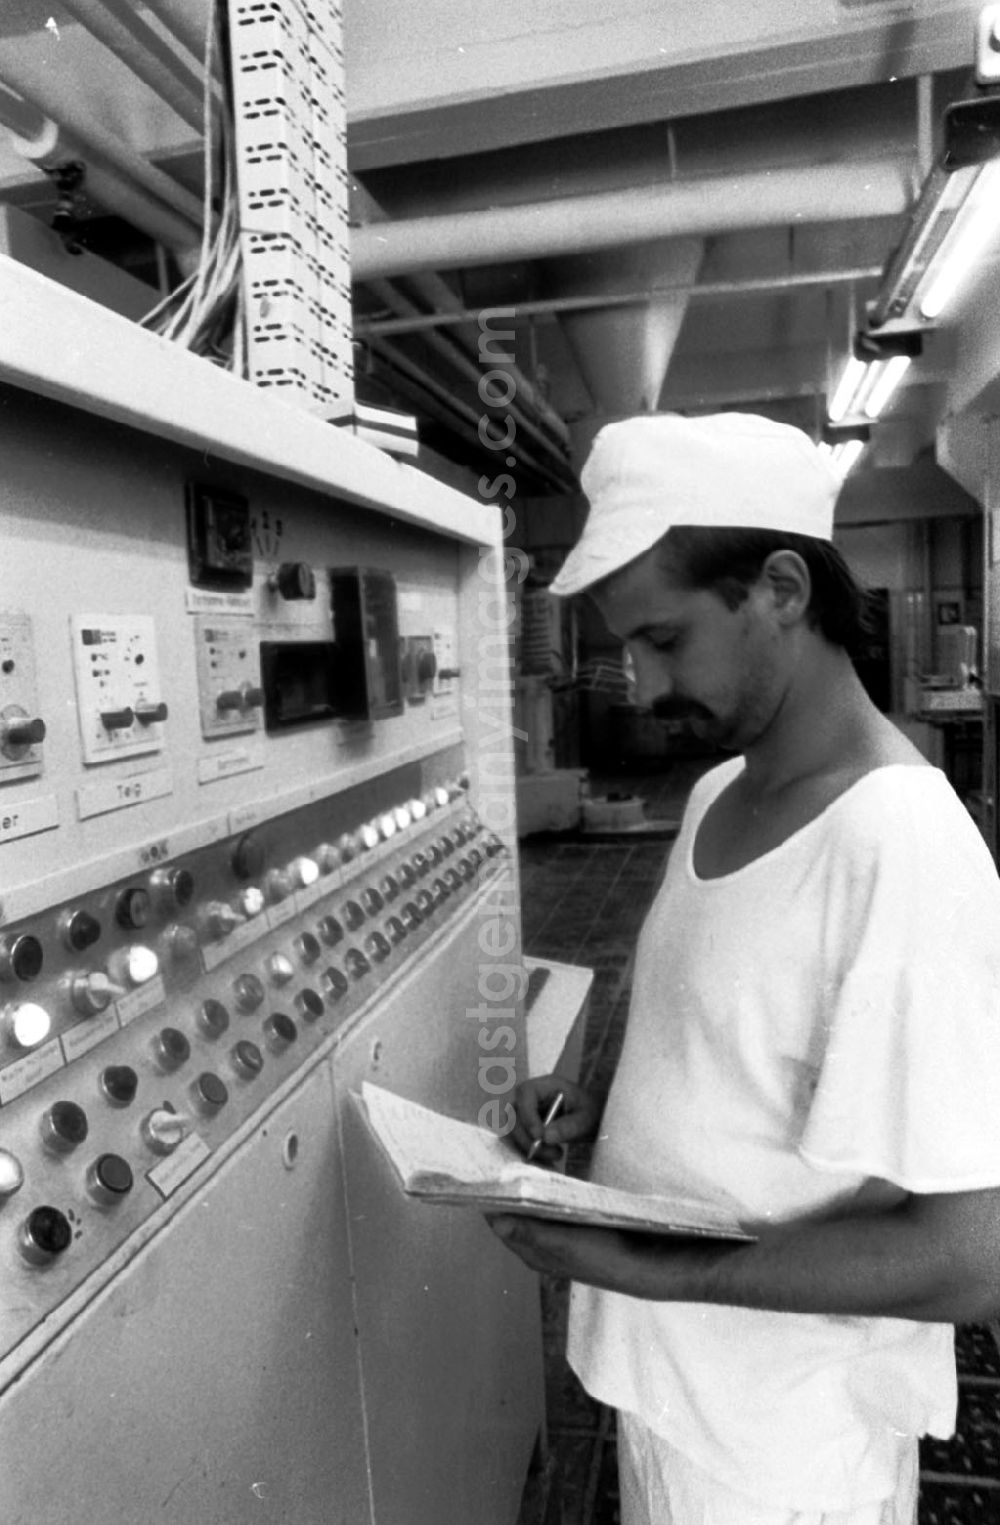 GDR photo archive: Berlin - Ein Techniker in einer Bäckerei in Heinersdorf steht vor Fließbandtechnik / Machine und schreibt Daten in Notizbuch.